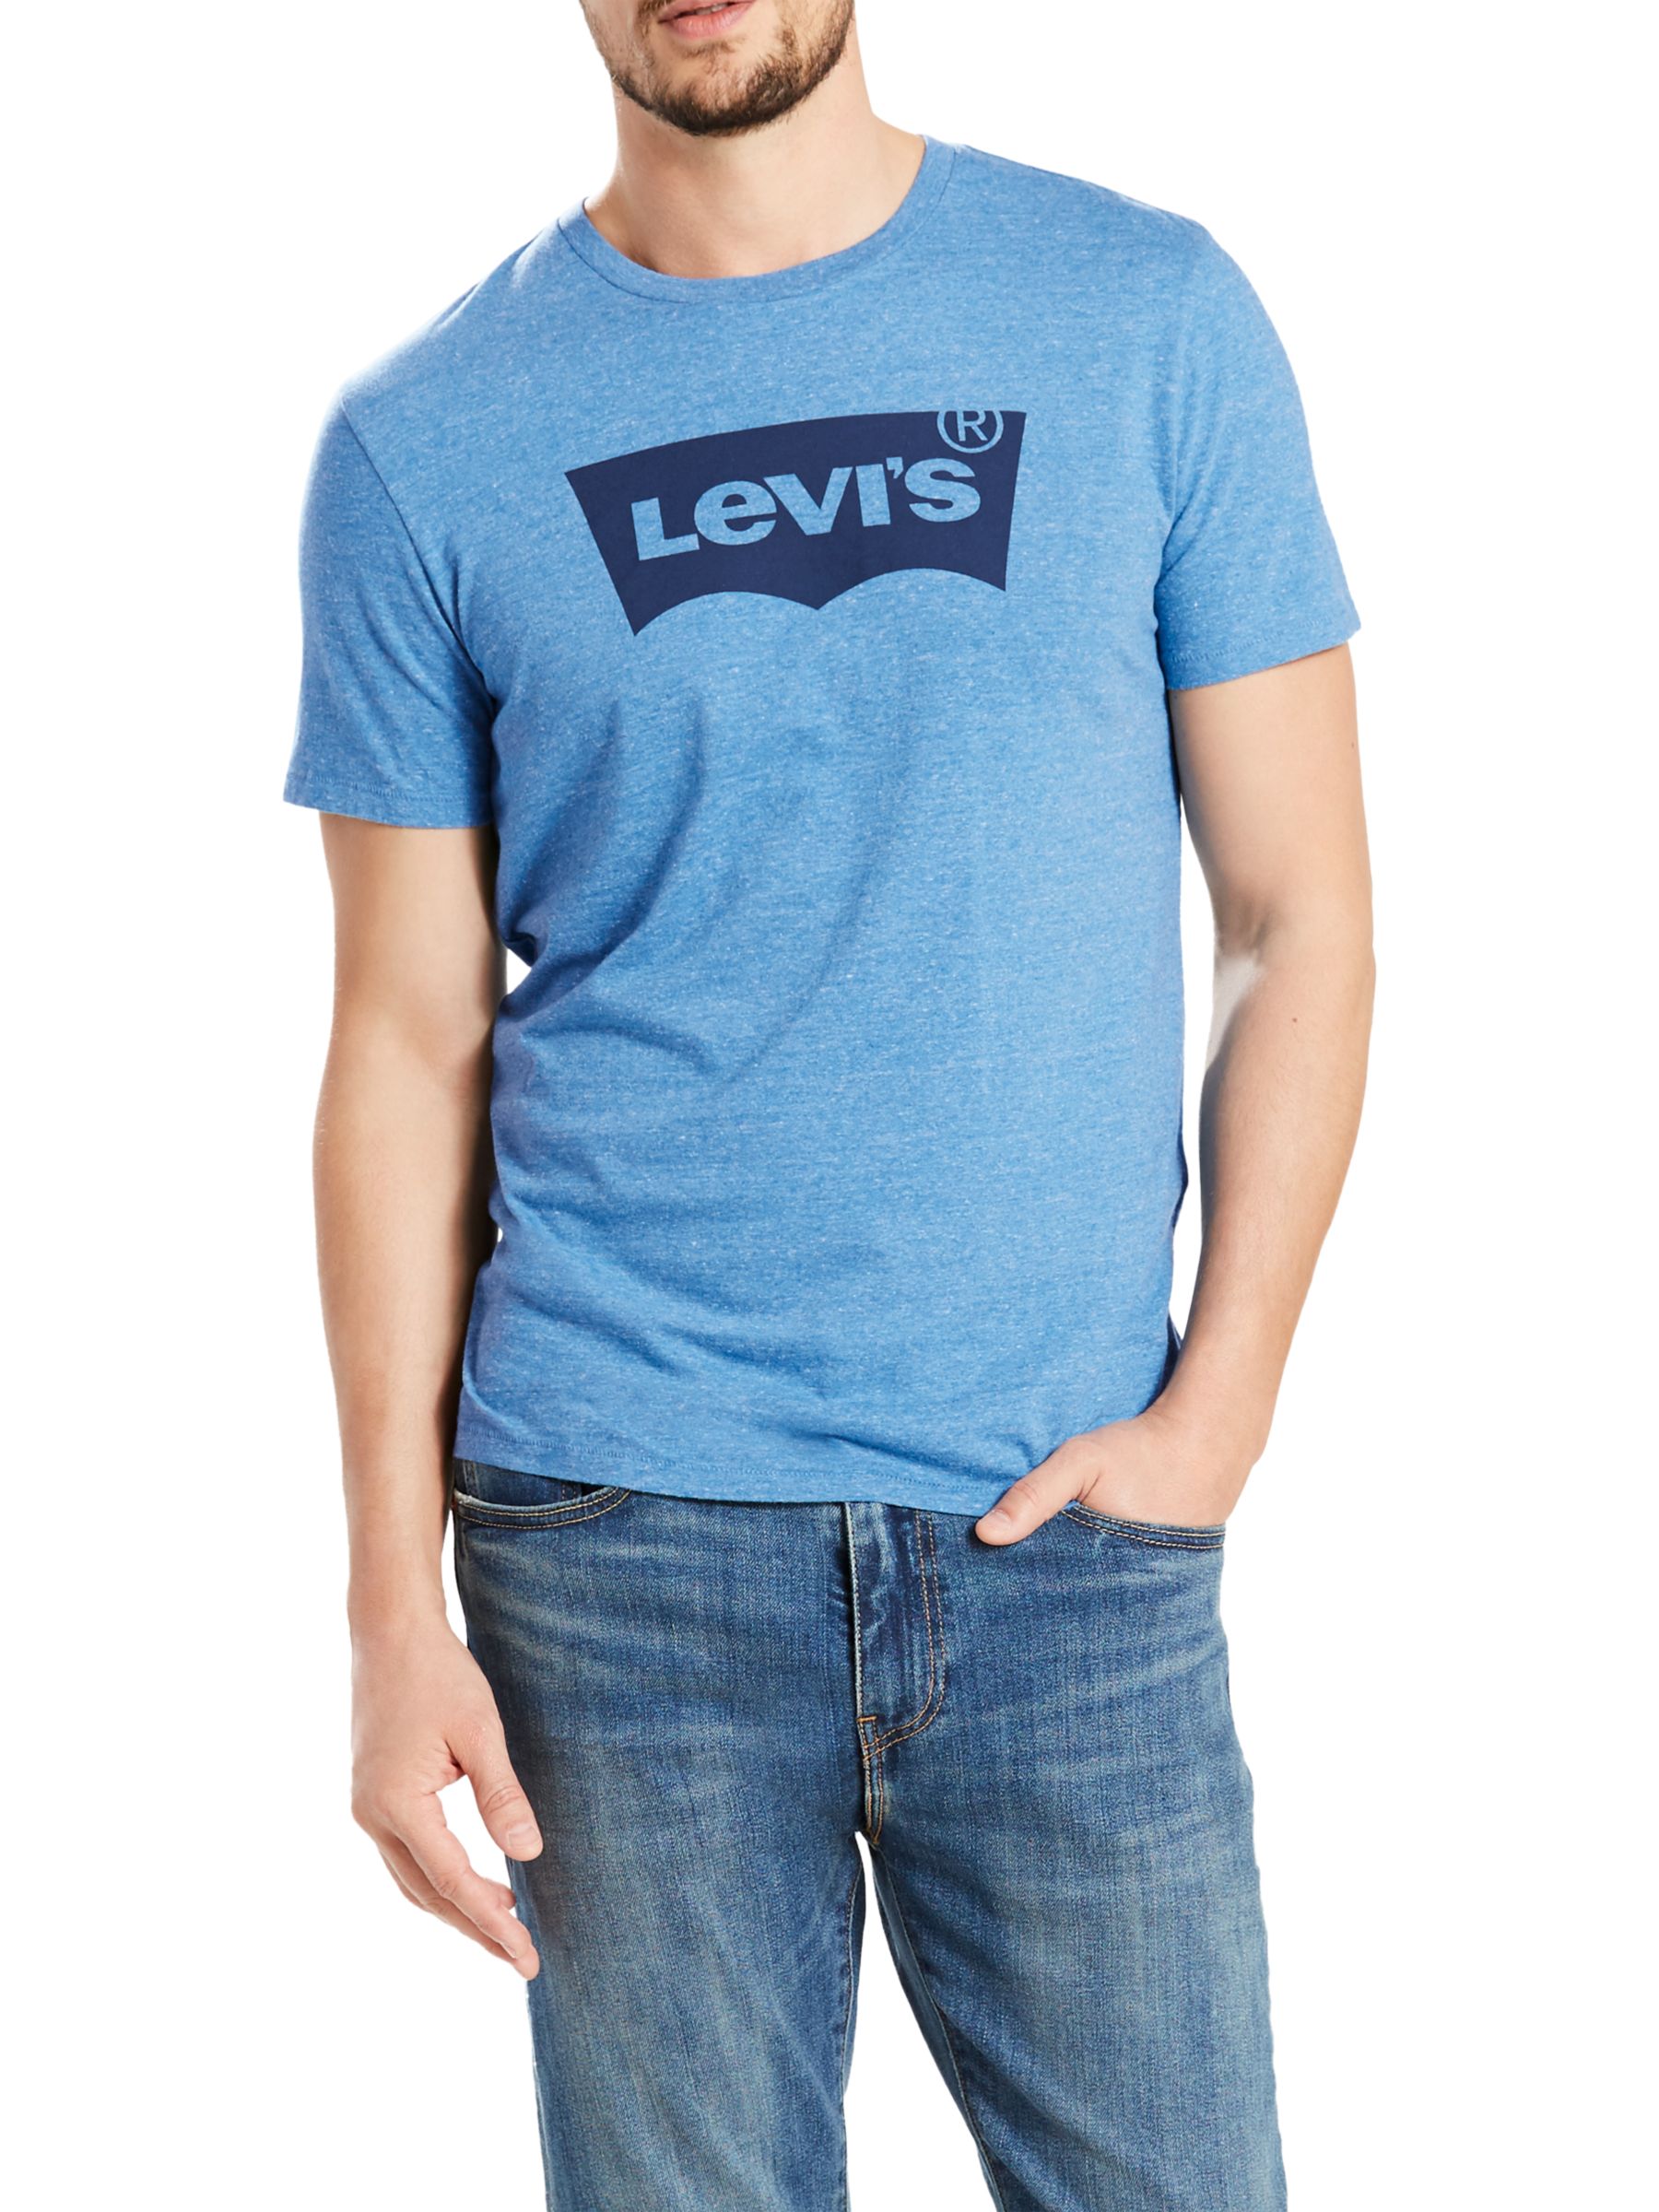 levis t shirt blue